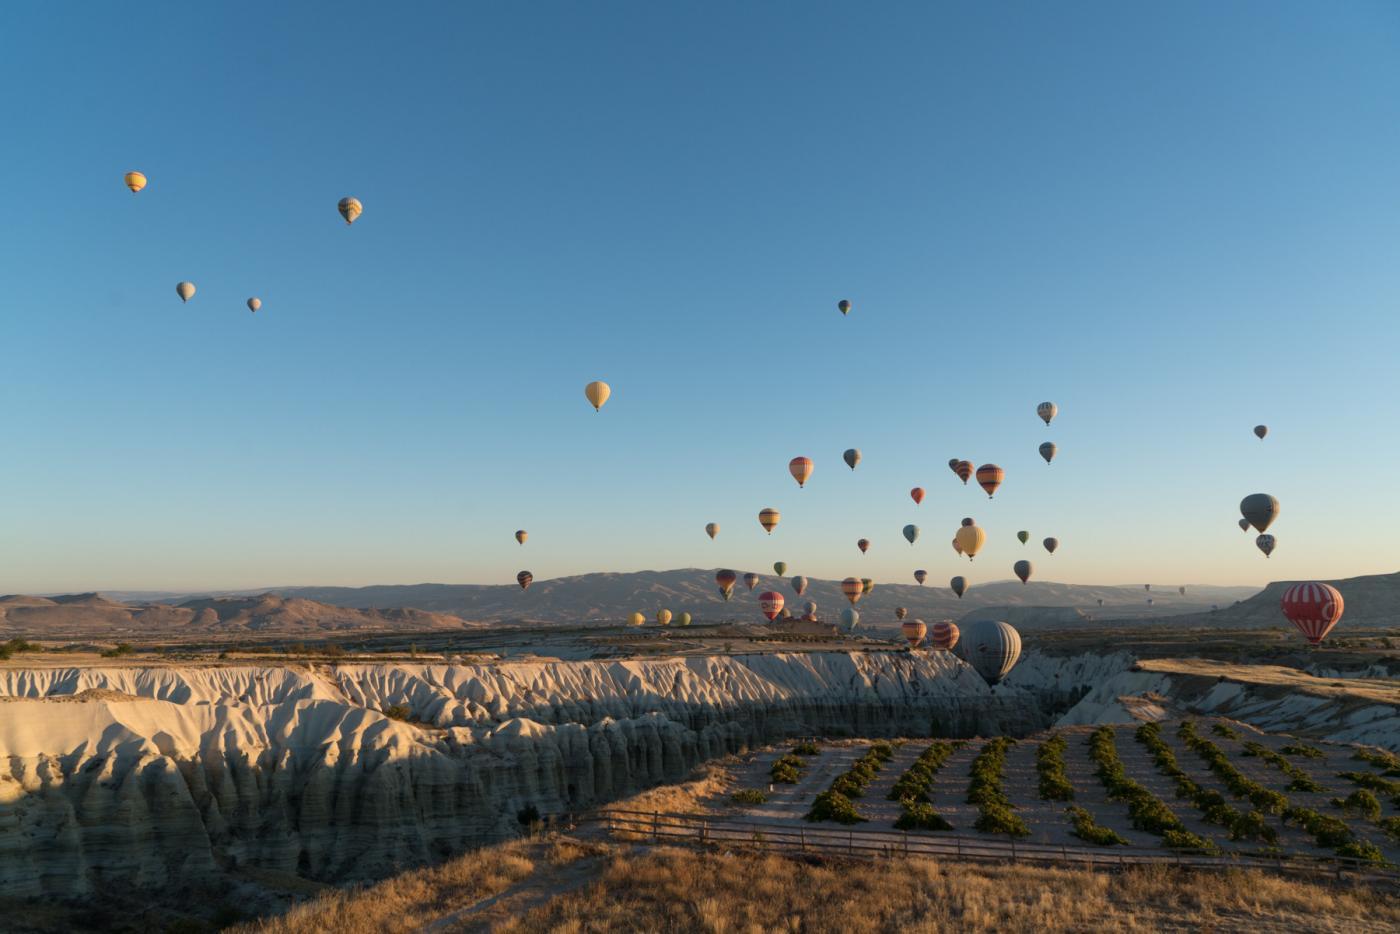 Balloon festival Cappadocia, Turkey